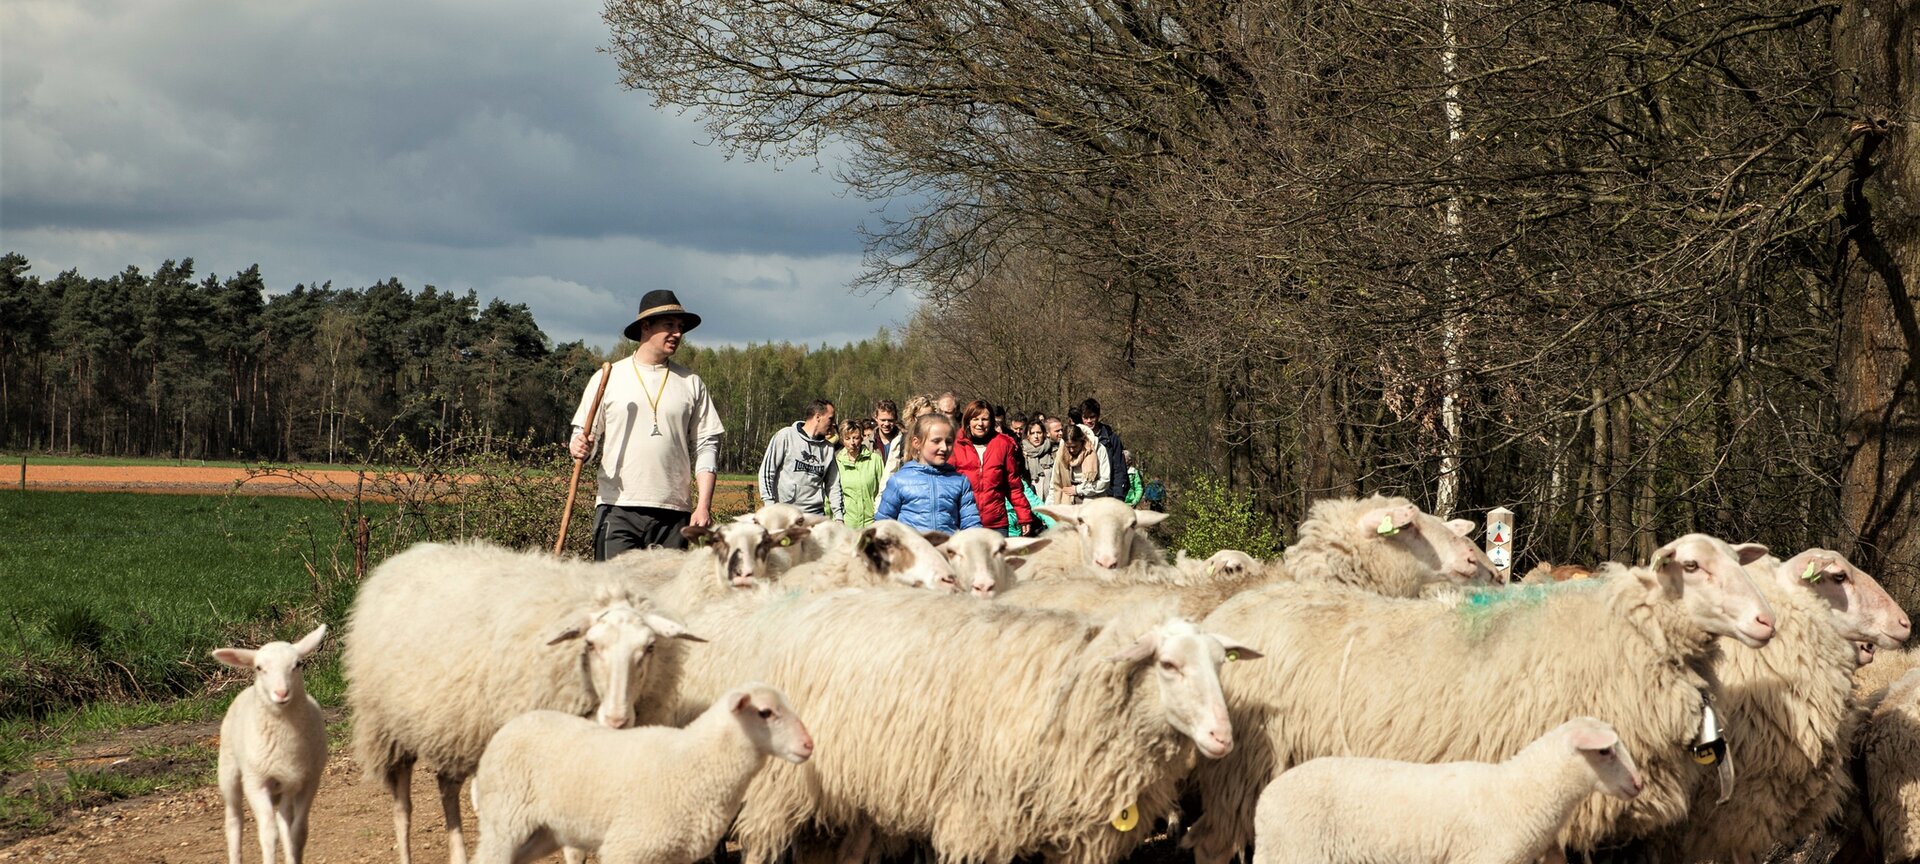 Picknickwandeling met de herder en zijn schapen - Picknickwandeling met schapen